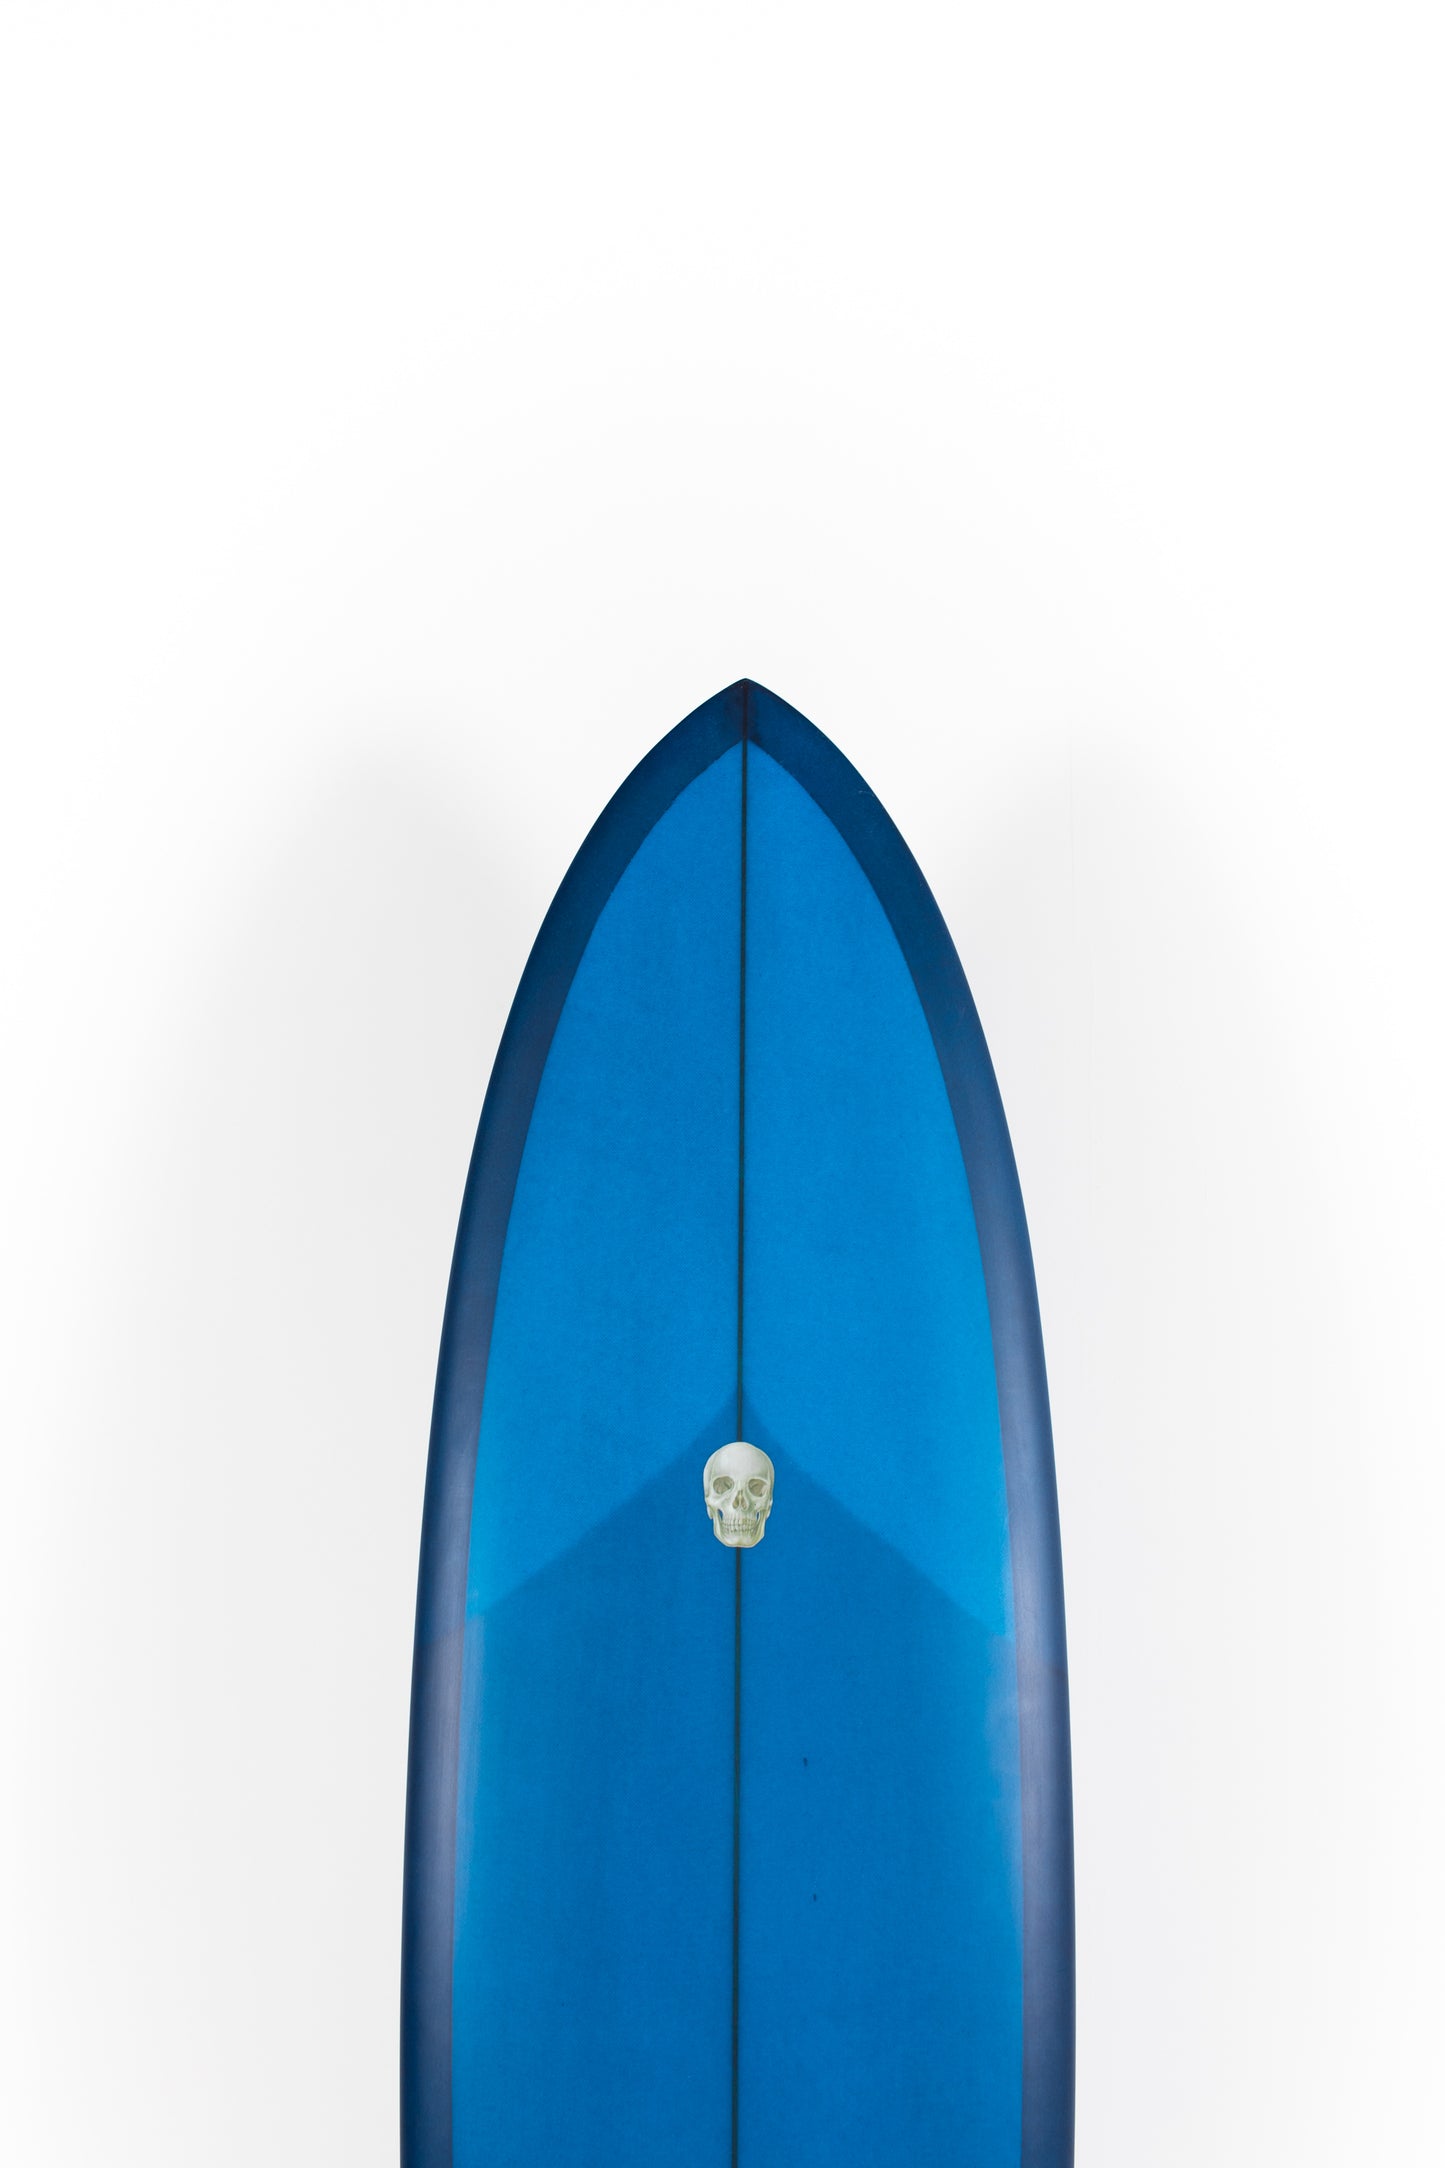 
                  
                    Pukas Surf Shop - Copia de Christenson Surfboards - TWIN TRACKER - 7'2" x 21 1/4  x 2 7/8 - CX03312
                  
                